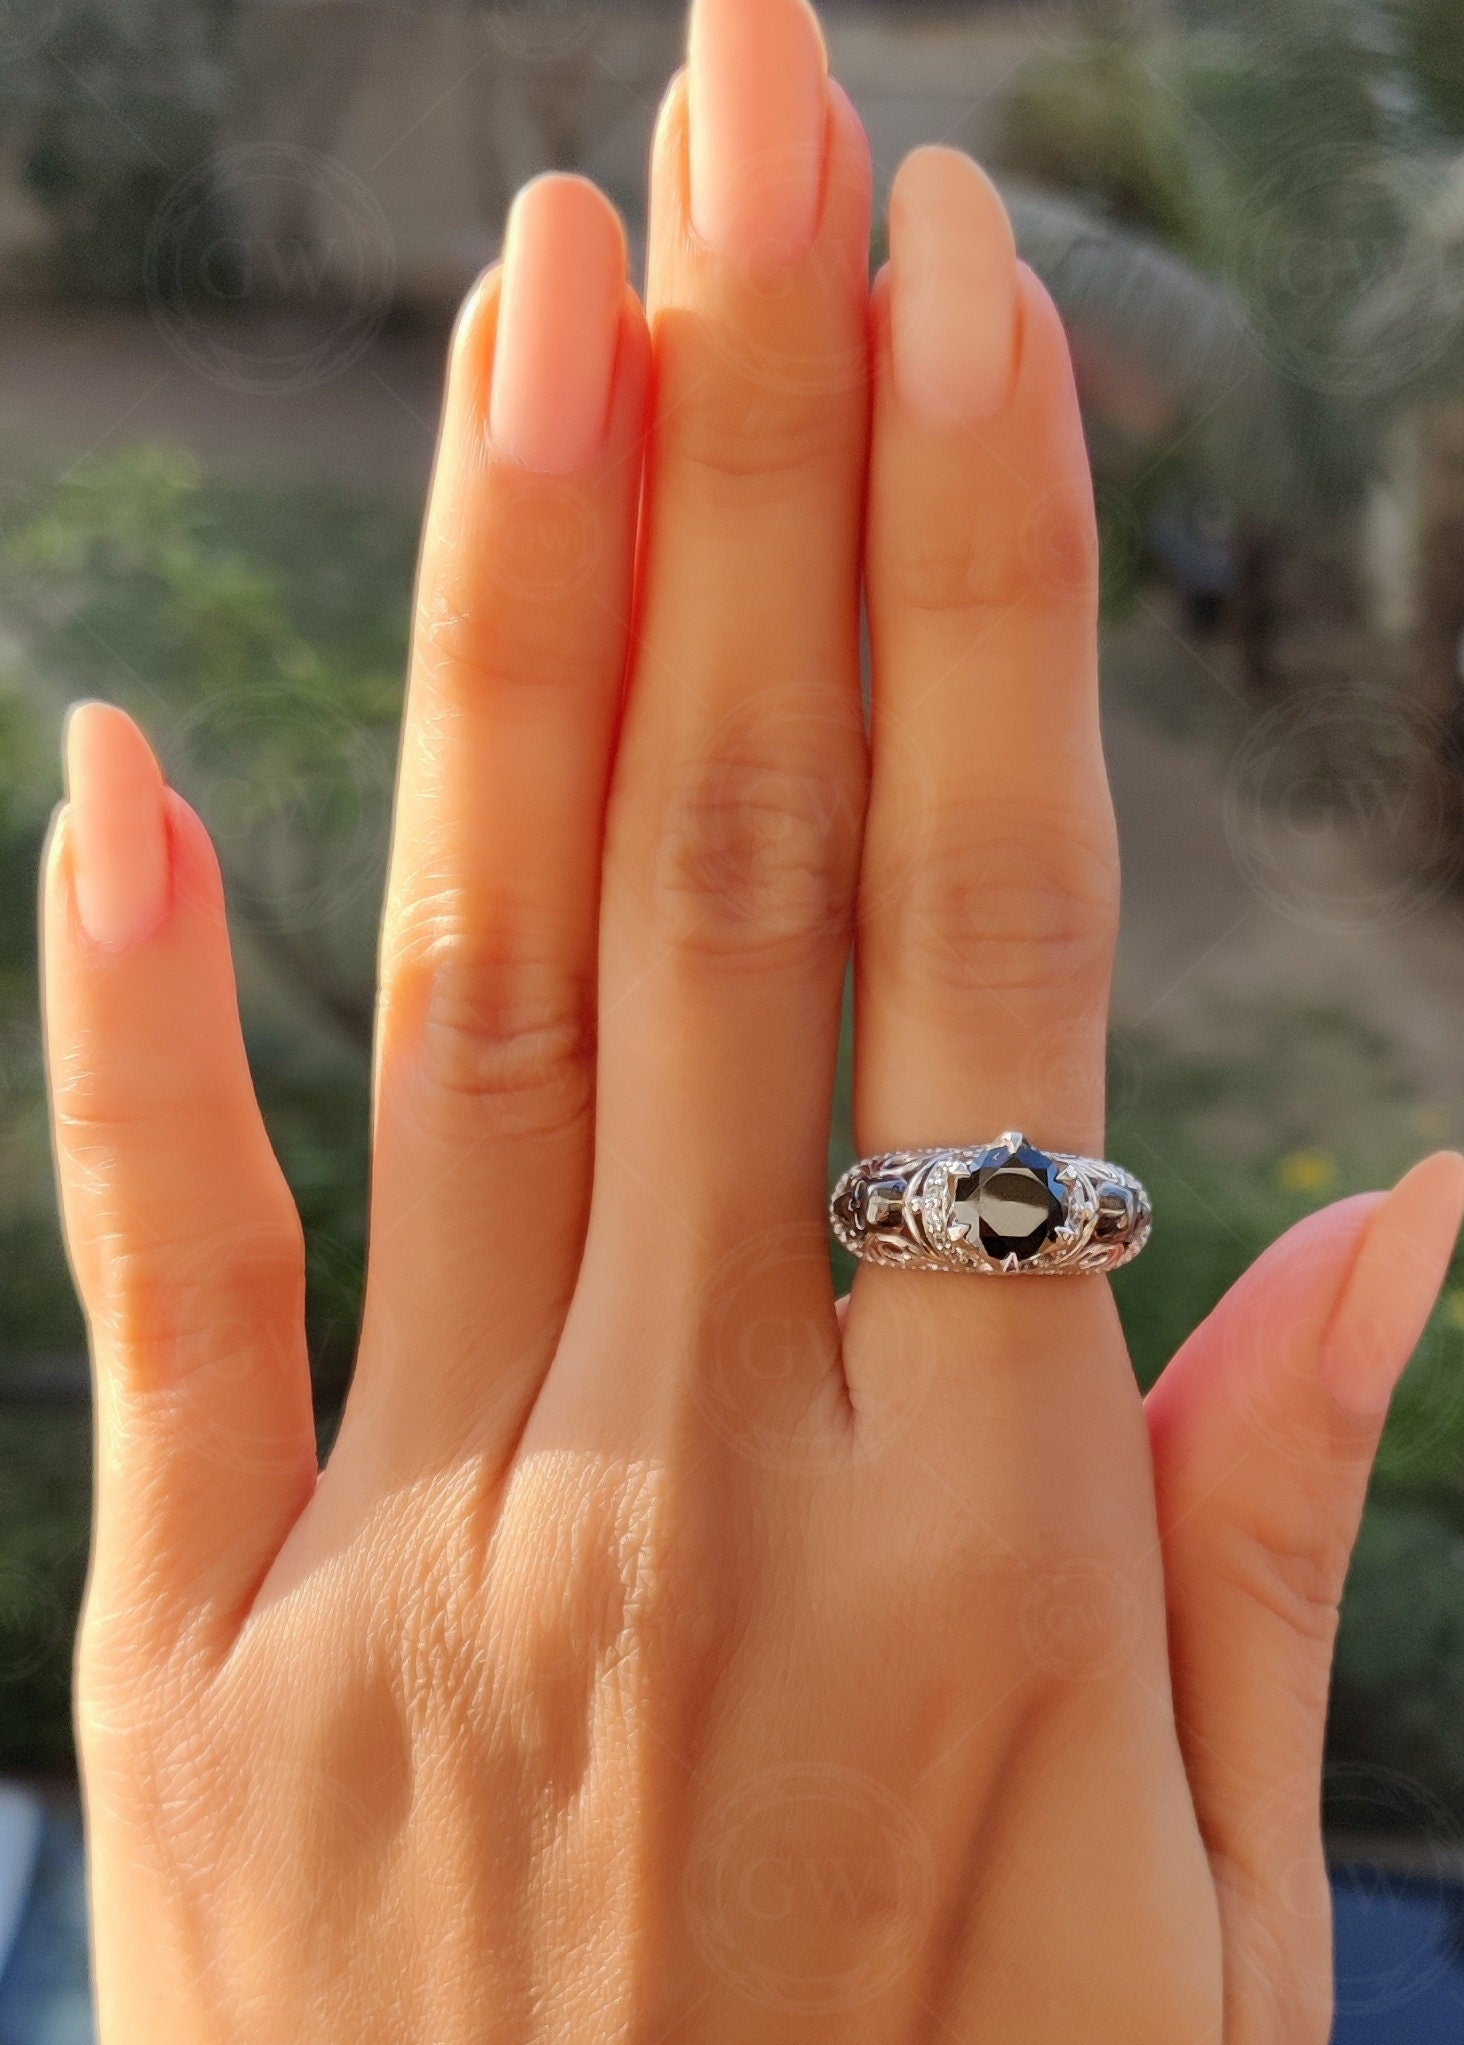 Gothic Skull Vintage Engagement Ring / Art Deco Skull Ring / Nature Inspired Skull Ring / Skull Ring For Women / Sterling Silver Skull Ring